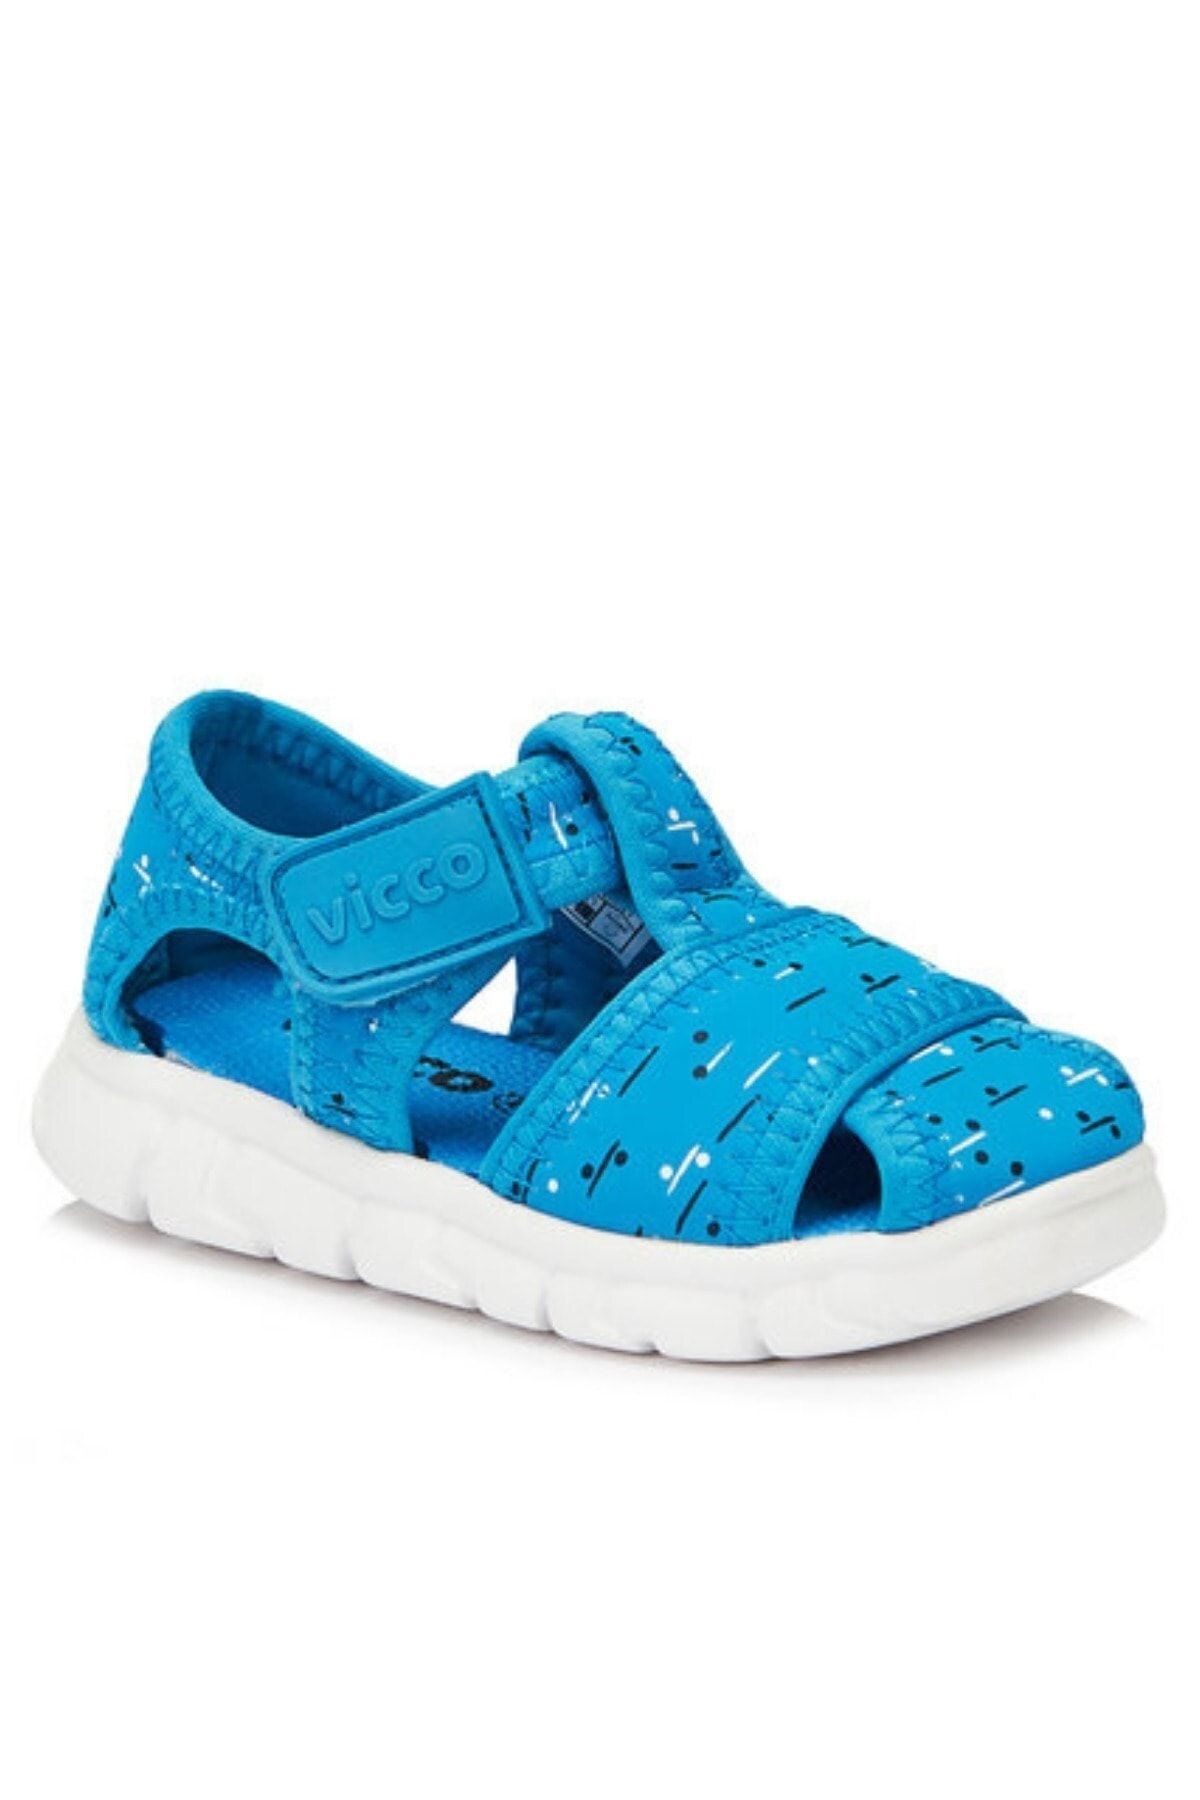 Vicco Unisexçocuk Eva Taban Hafif Ve Ortapedik Çocuk Sandalet / Ayakkabı Modeli - Mavi